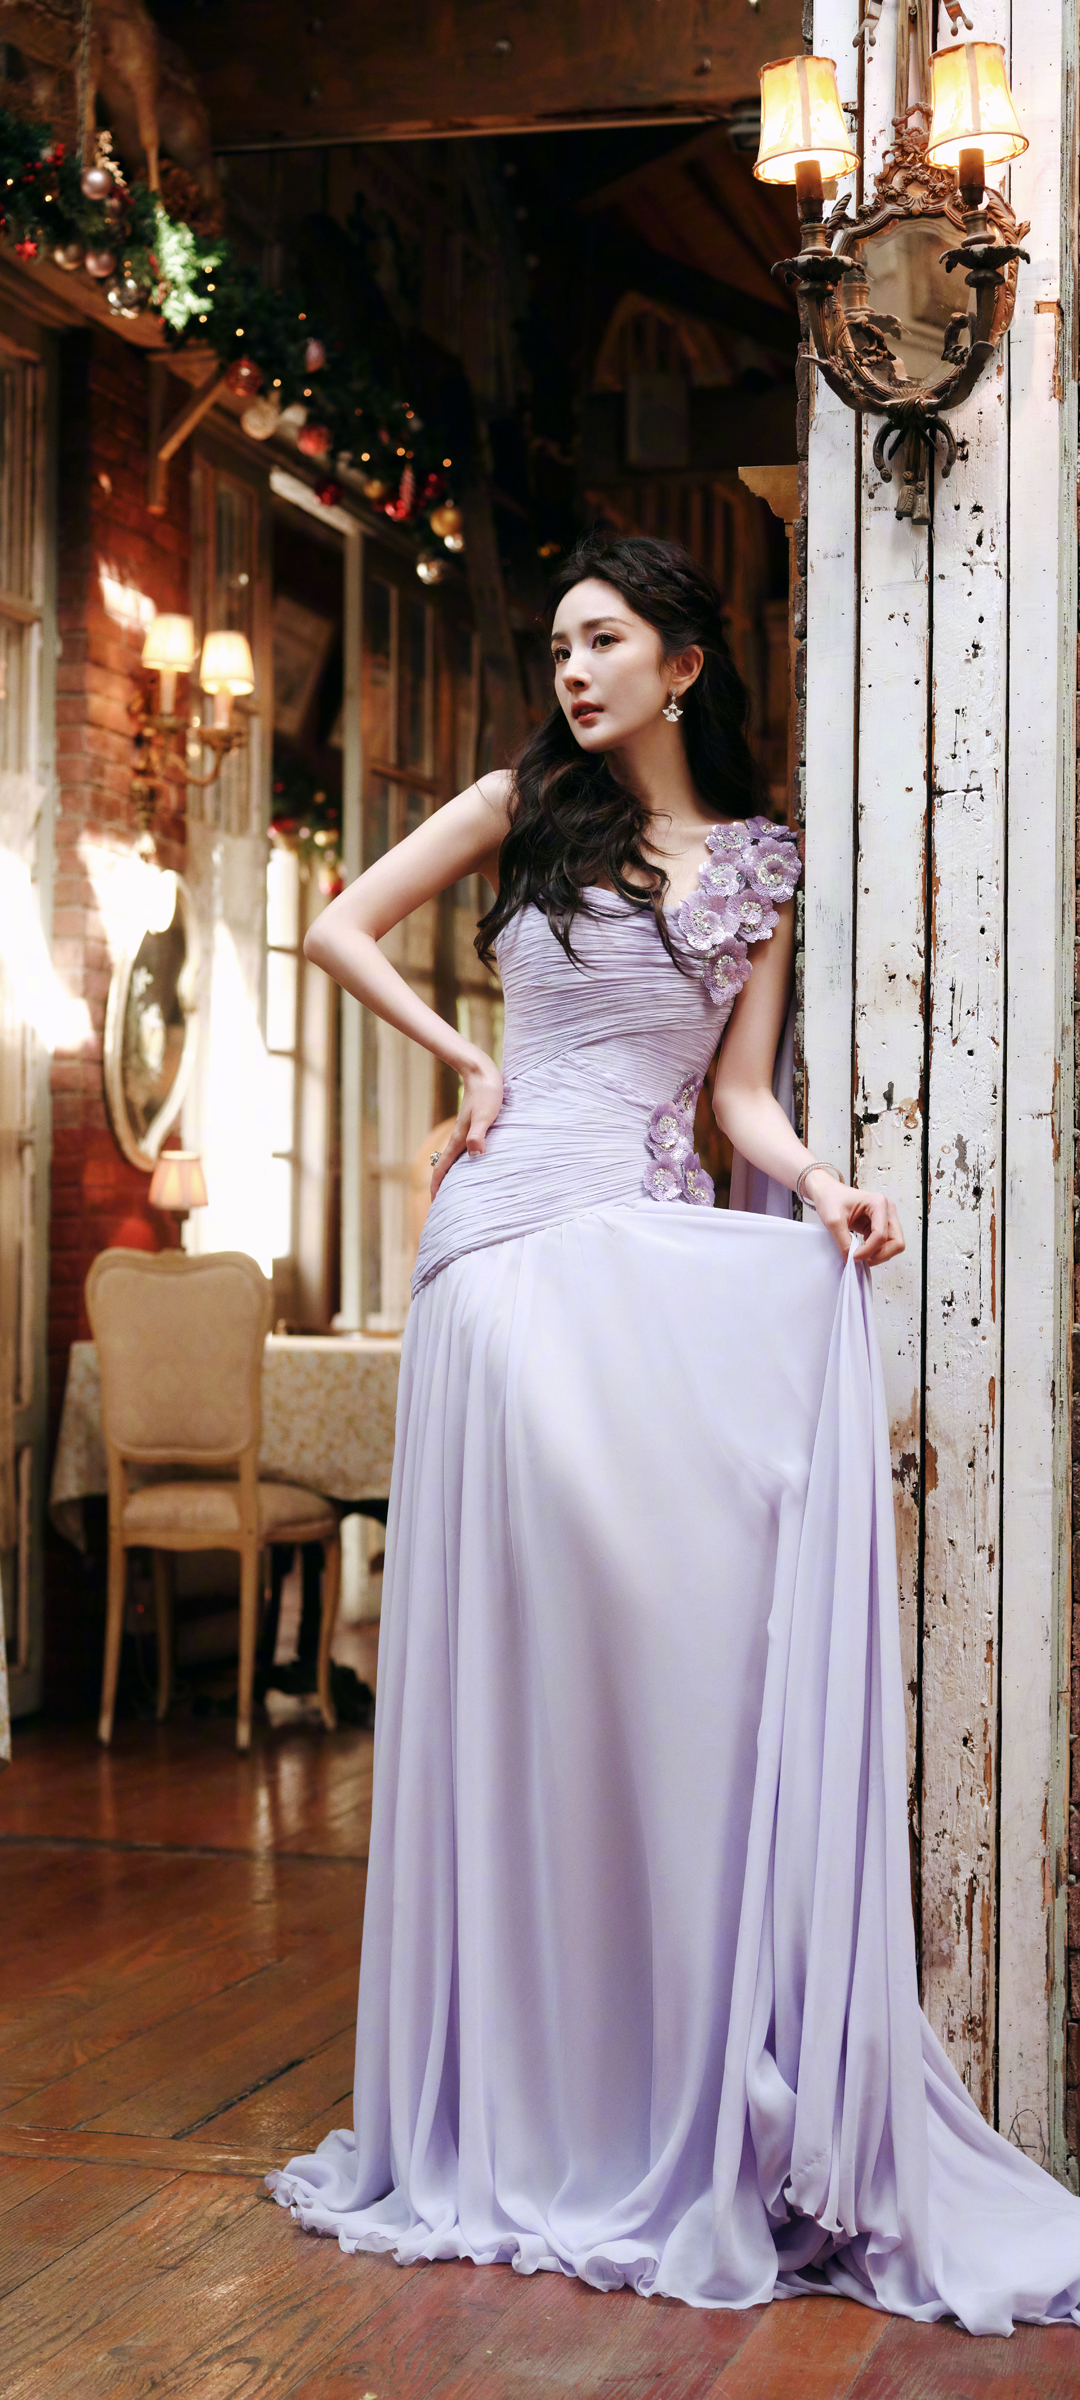 紫色长裙优雅美女杨幂手机高清壁纸